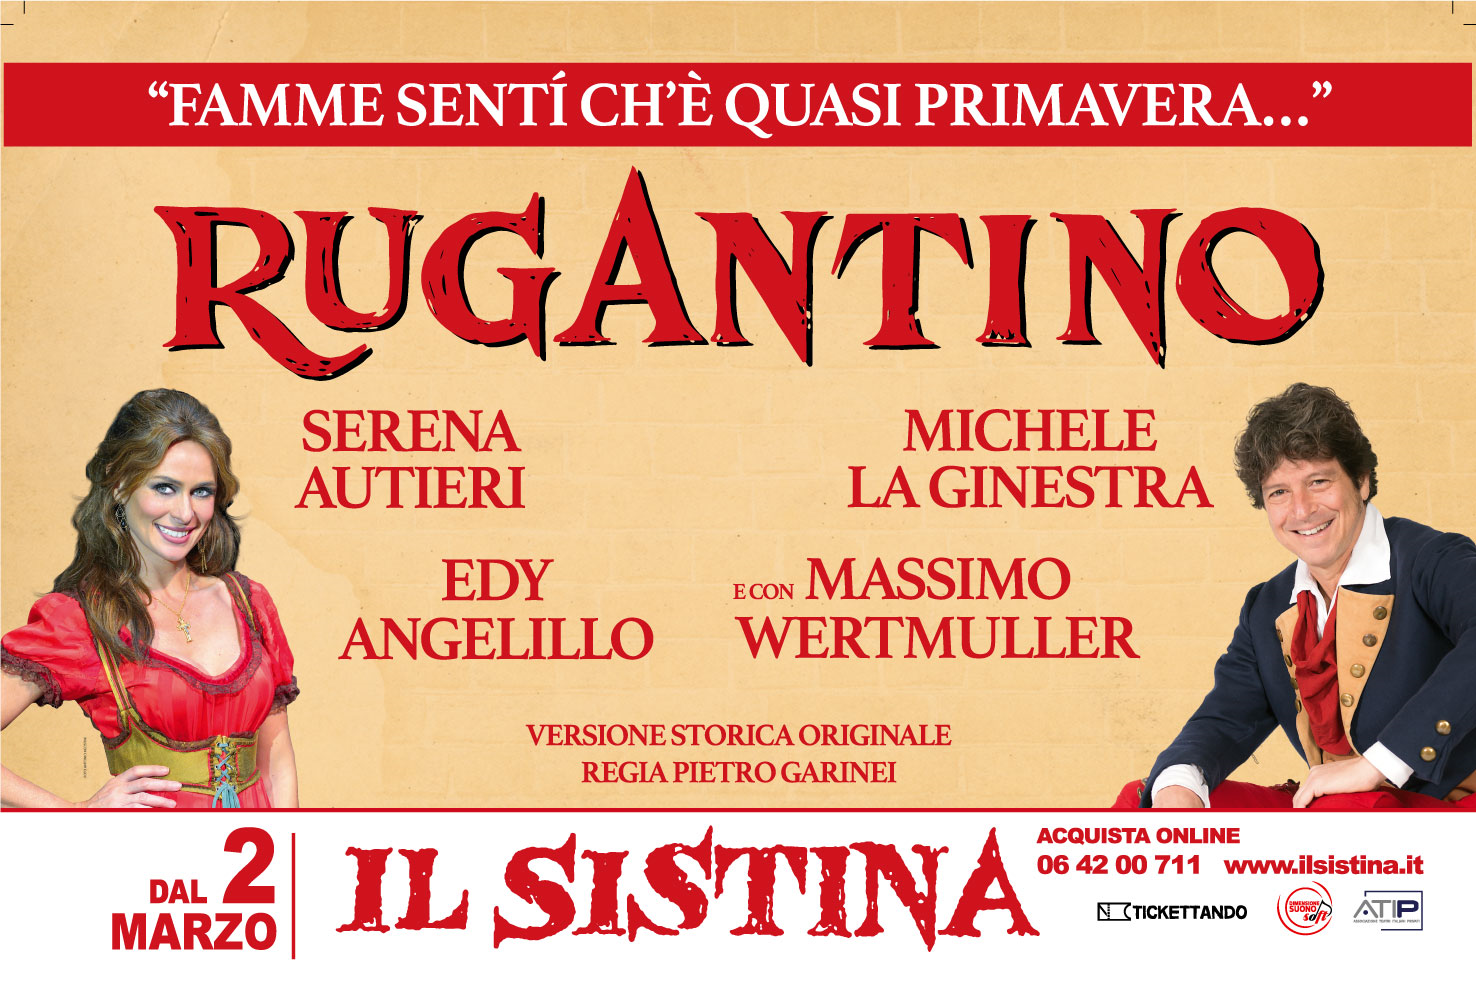 Teatro Sistina: torna "Rugantino" con Serena Autieri e Michele La Ginestra